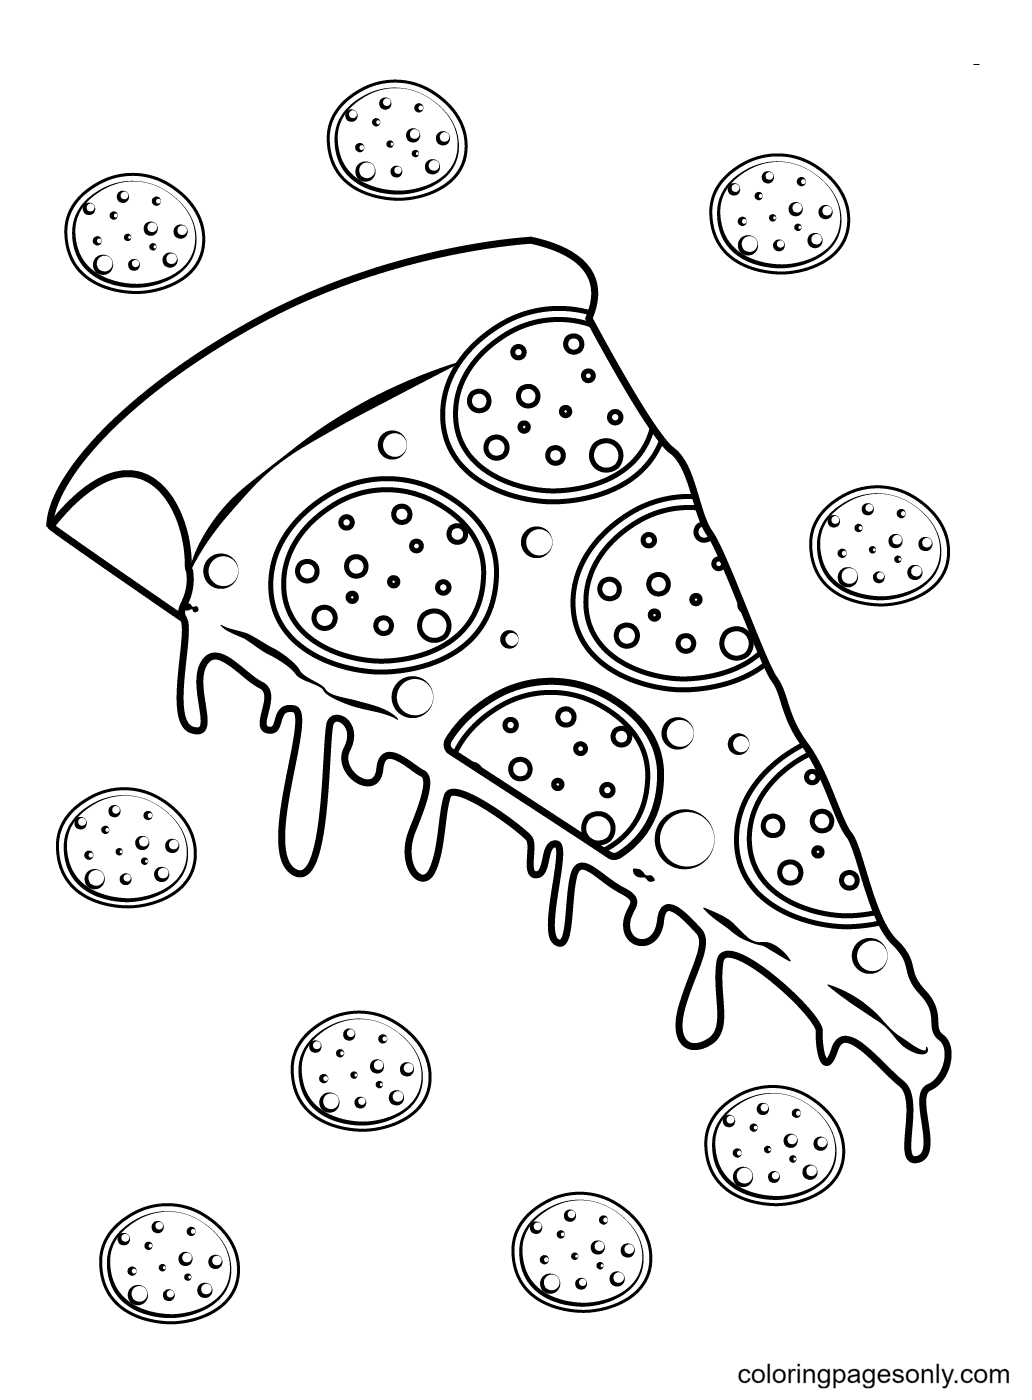 Dibujo De Pizza Con Ingredientes De Pepperoni Y Queso Derretido Rezumante Para Colorear